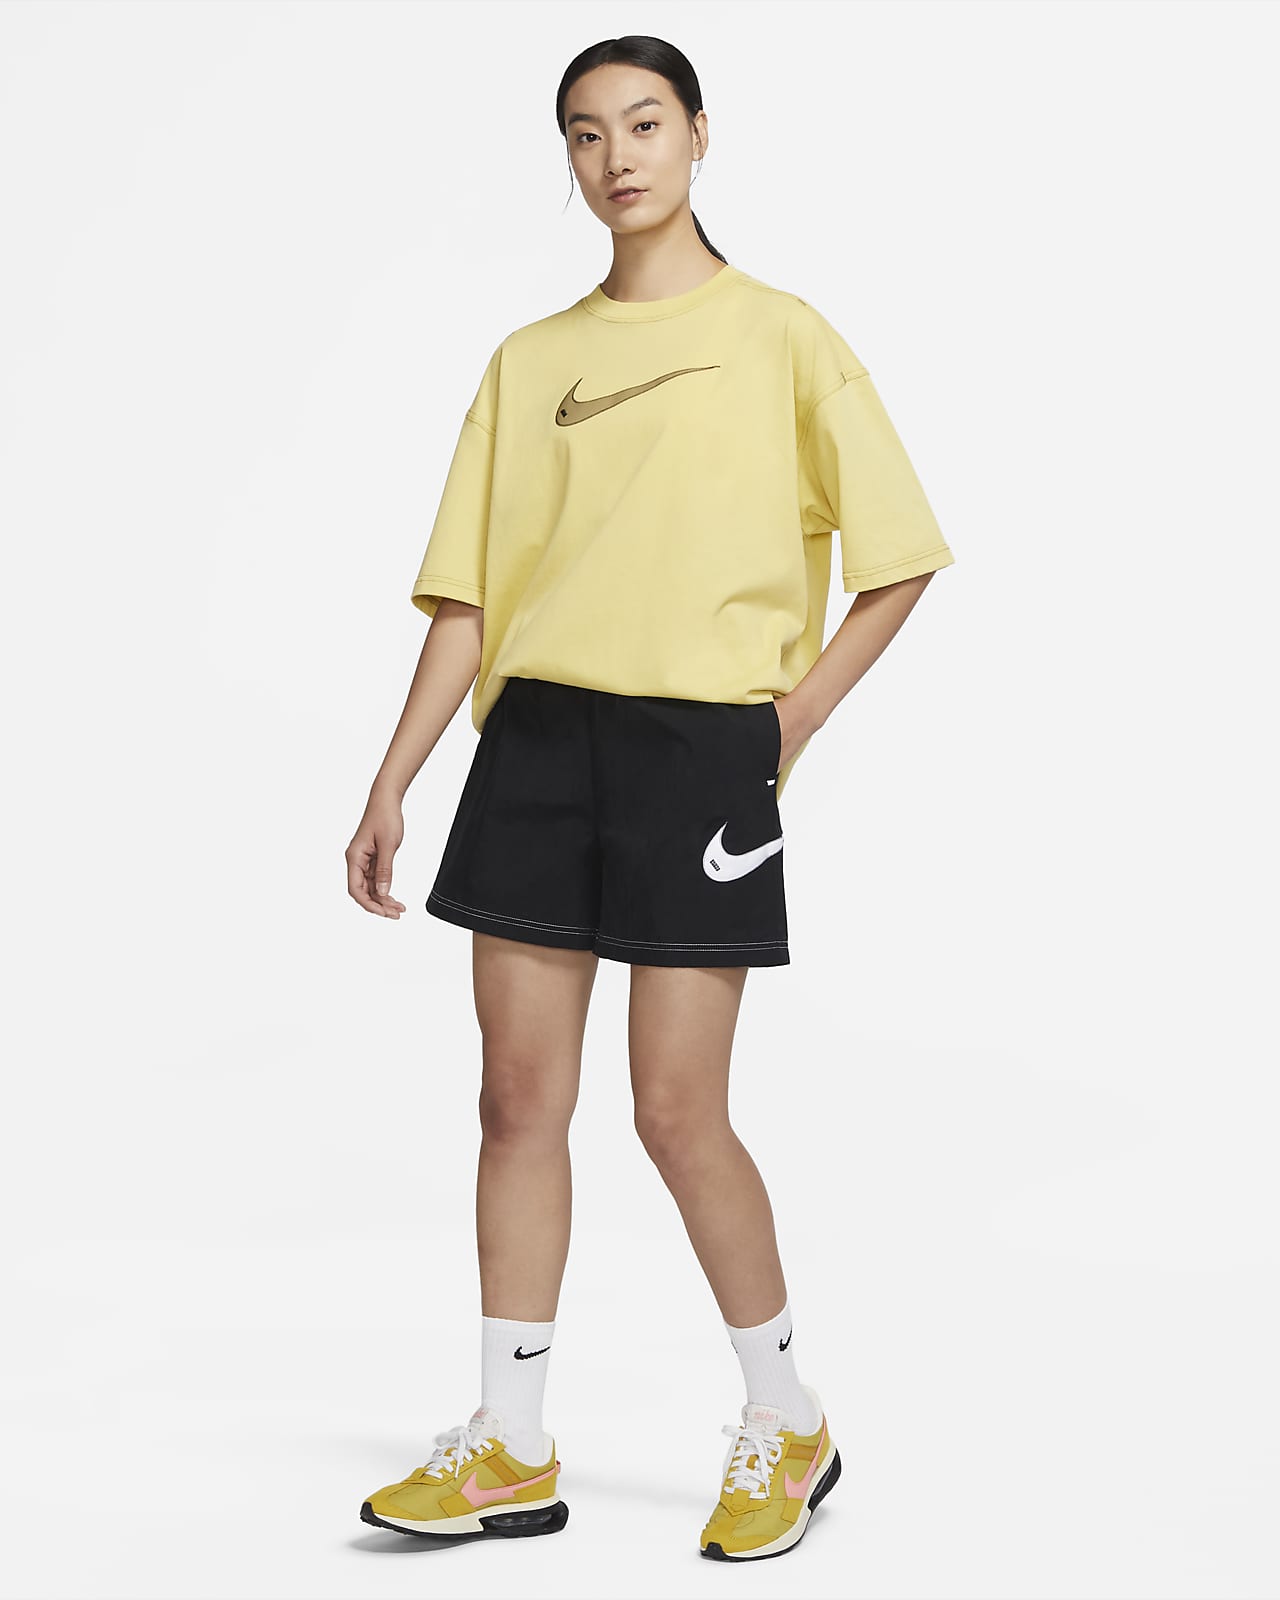 Nike Sportswear's Women's Crew & Shorts Release